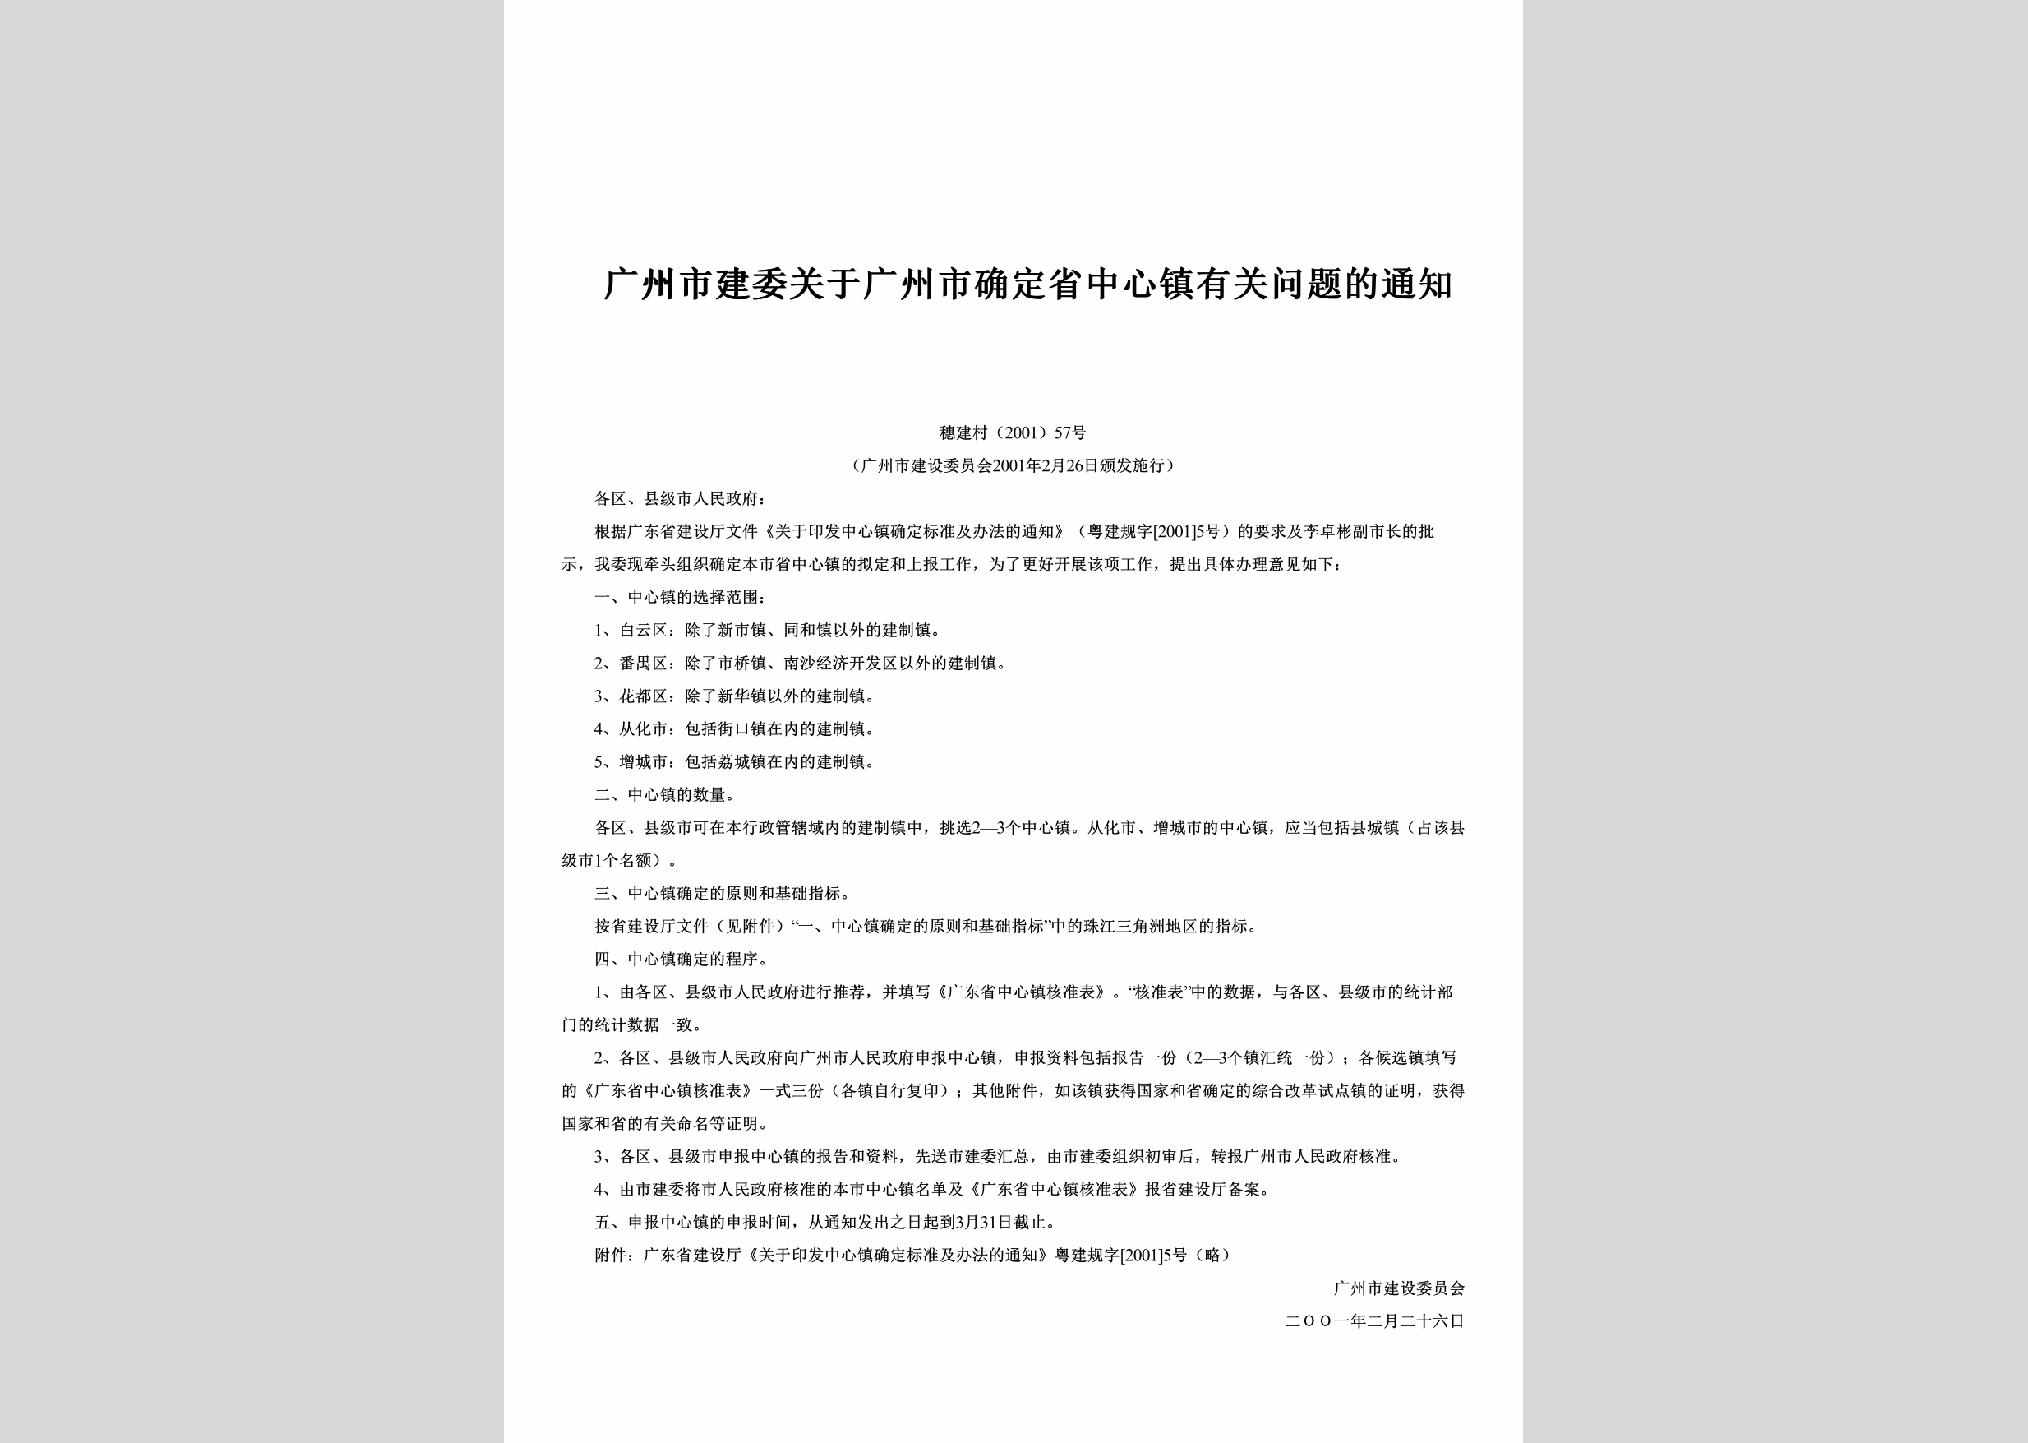 穗建村[2001]57号：关于广州市确定省中心镇有关问题的通知